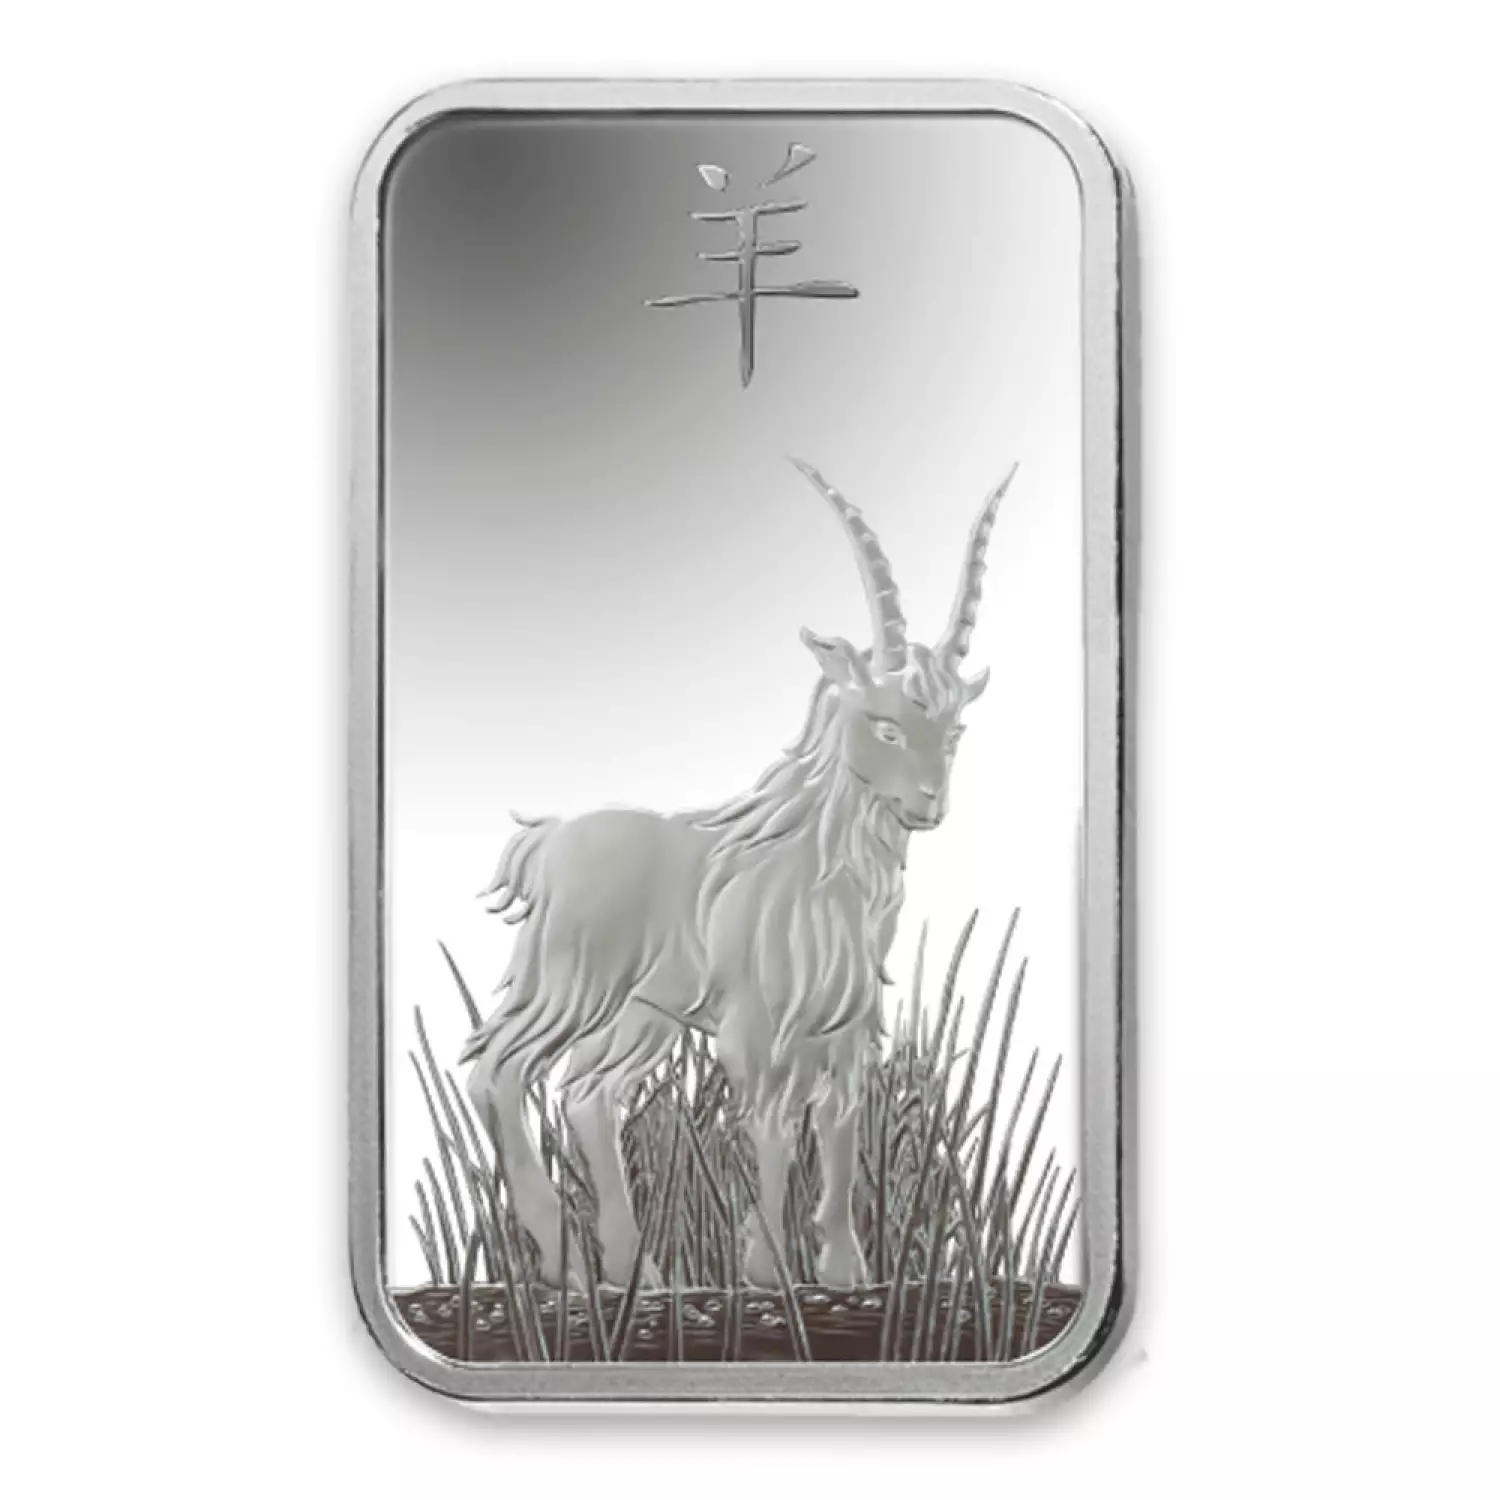 100 g PAMP Silver Bar - Lunar Goat (2)